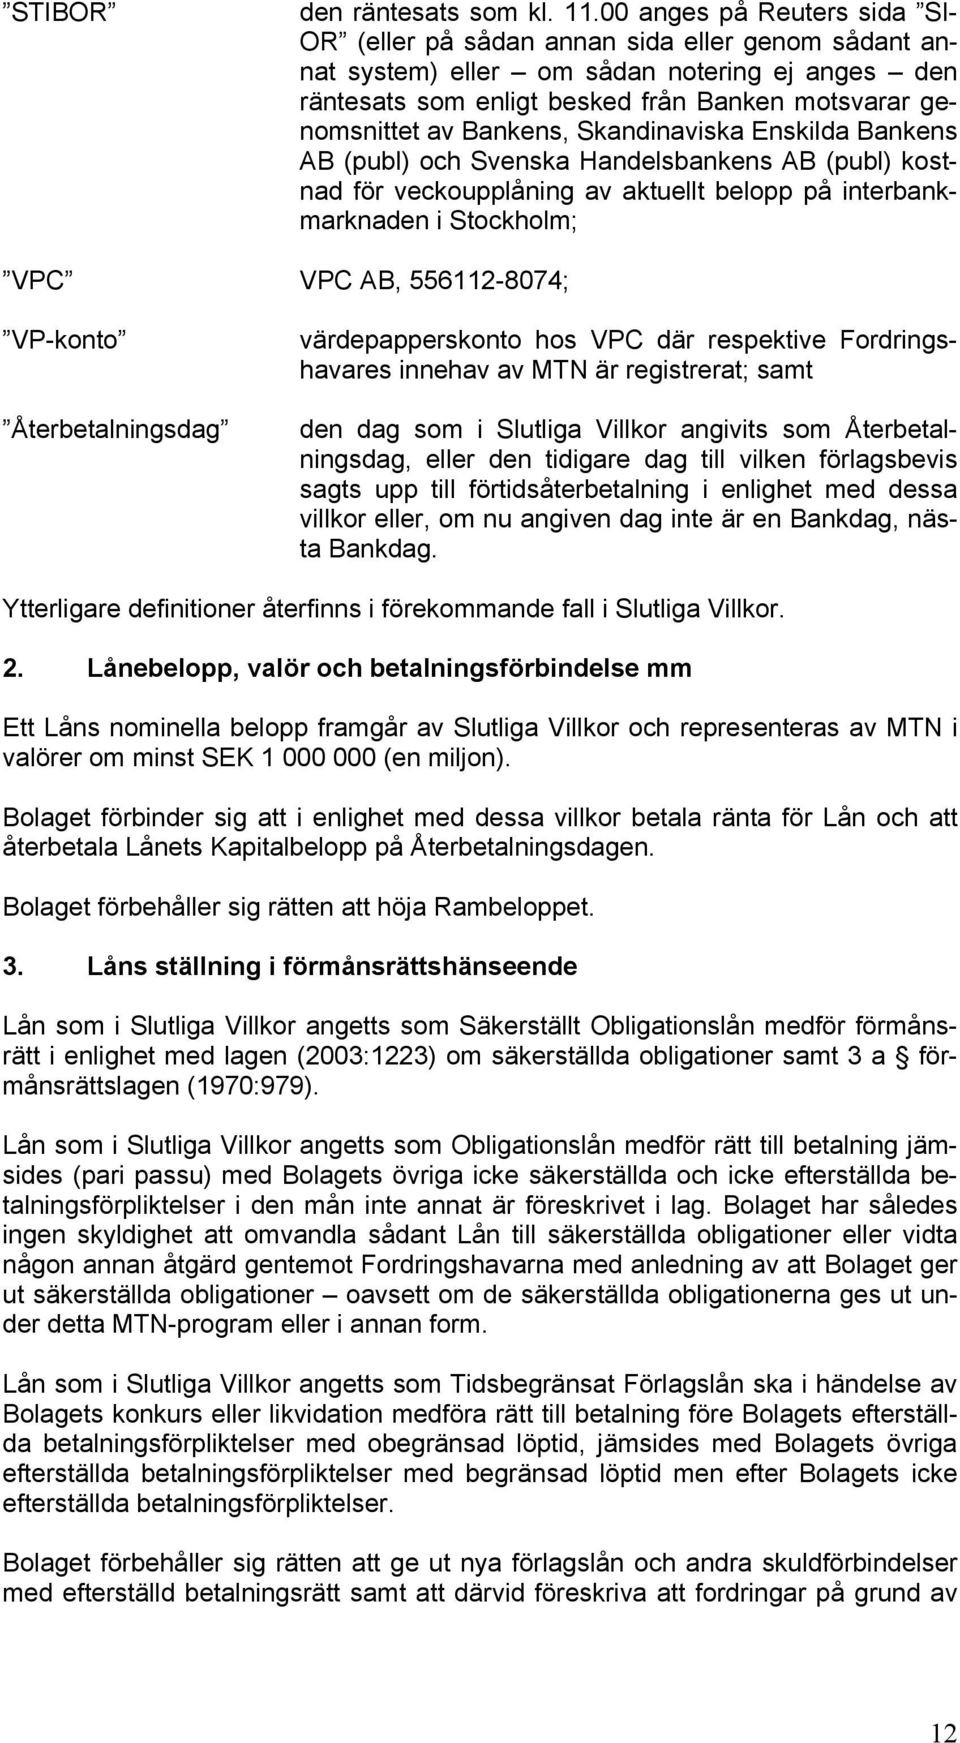 Bankens, Skandinaviska Enskilda Bankens AB (publ) och Svenska Handelsbankens AB (publ) kostnad för veckoupplåning av aktuellt belopp på interbankmarknaden i Stockholm; VPC VPC AB, 556112-8074;